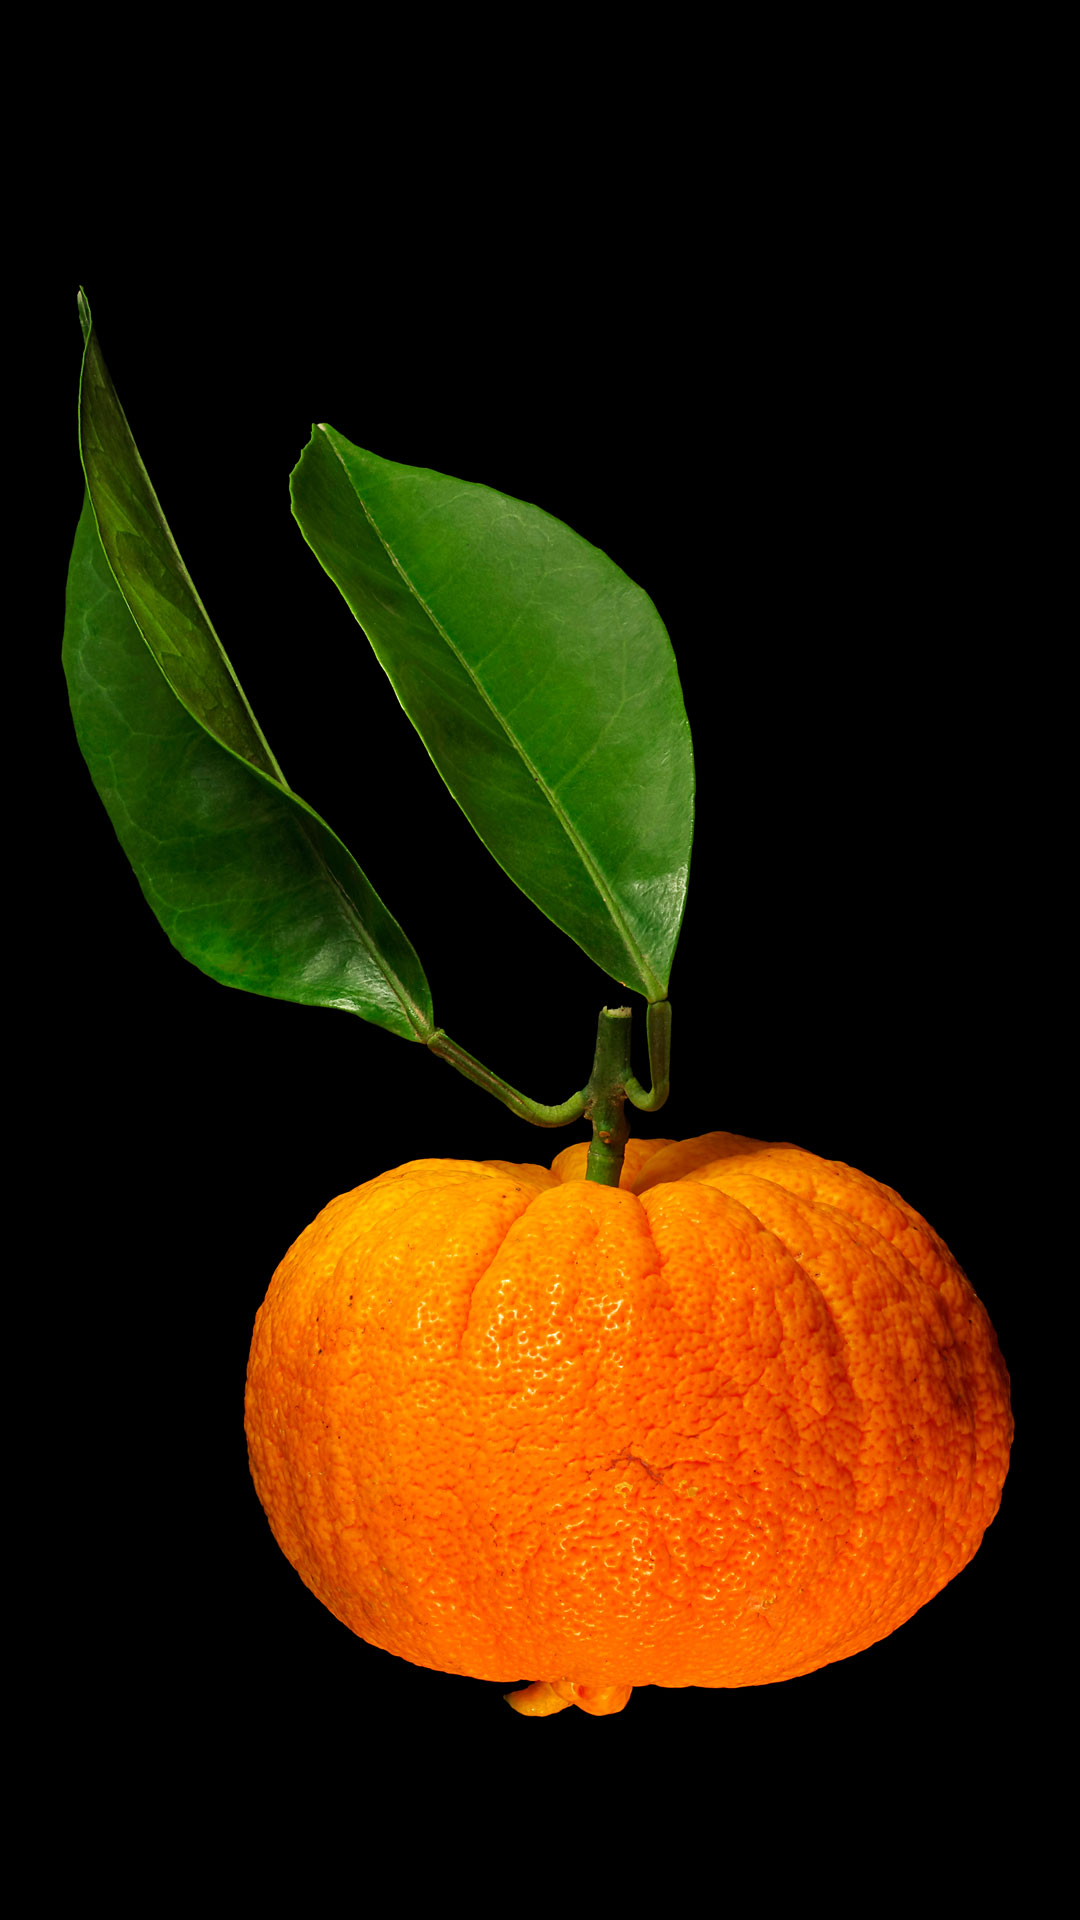 Childing orange: Citrus × aurantium ‚Foetifera‘